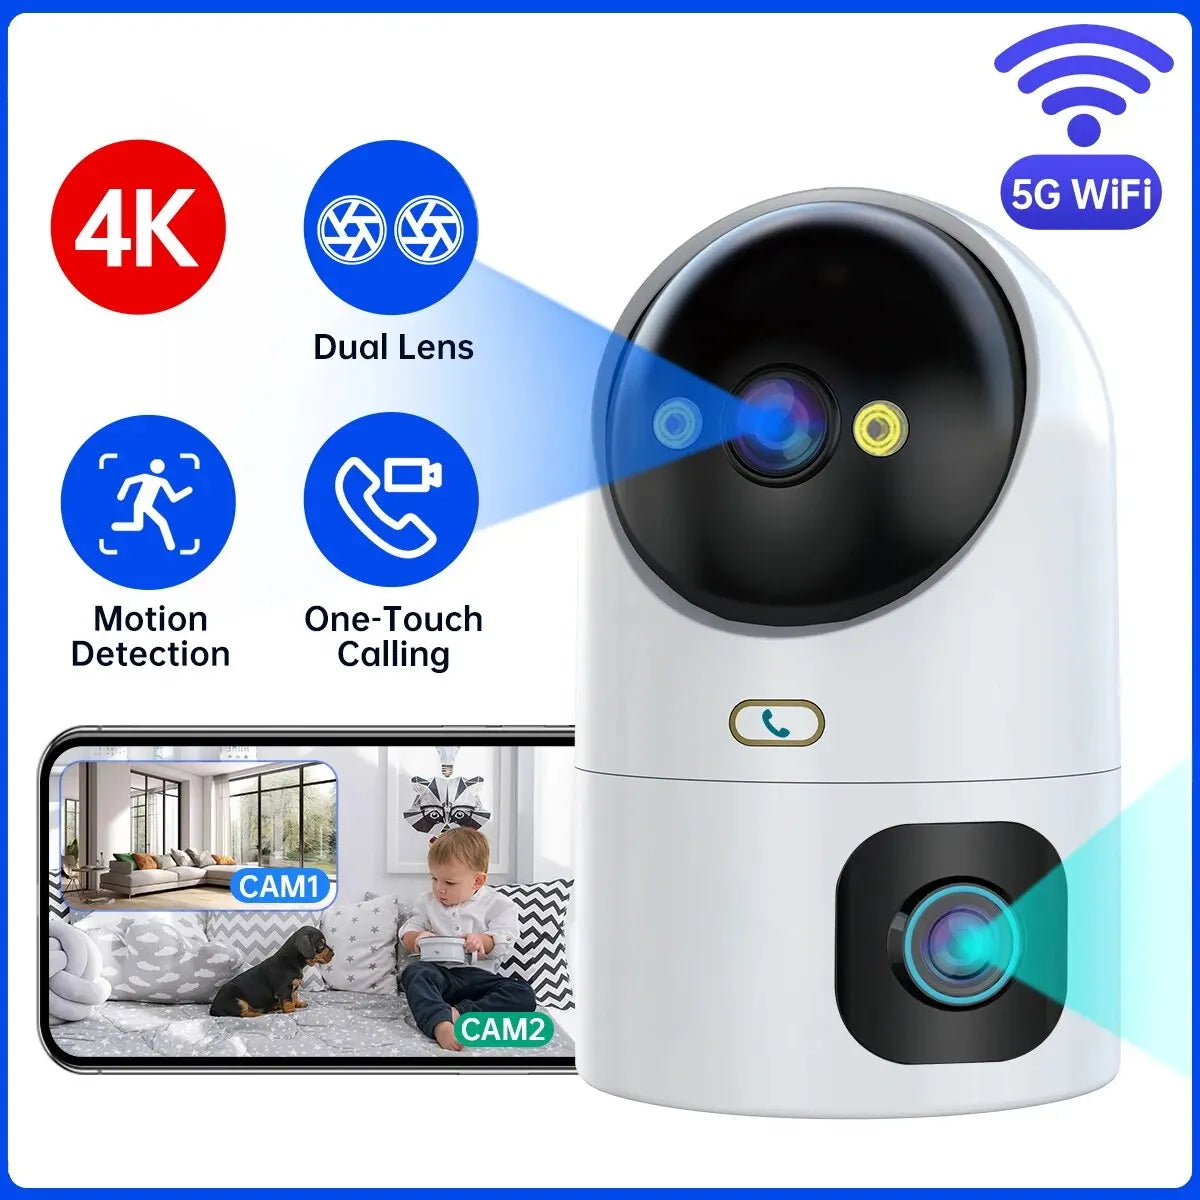 4K Dual Lens Auto Tracking WiFi CCTV Camera with Color Night Vision  ourlum.com European regulations  